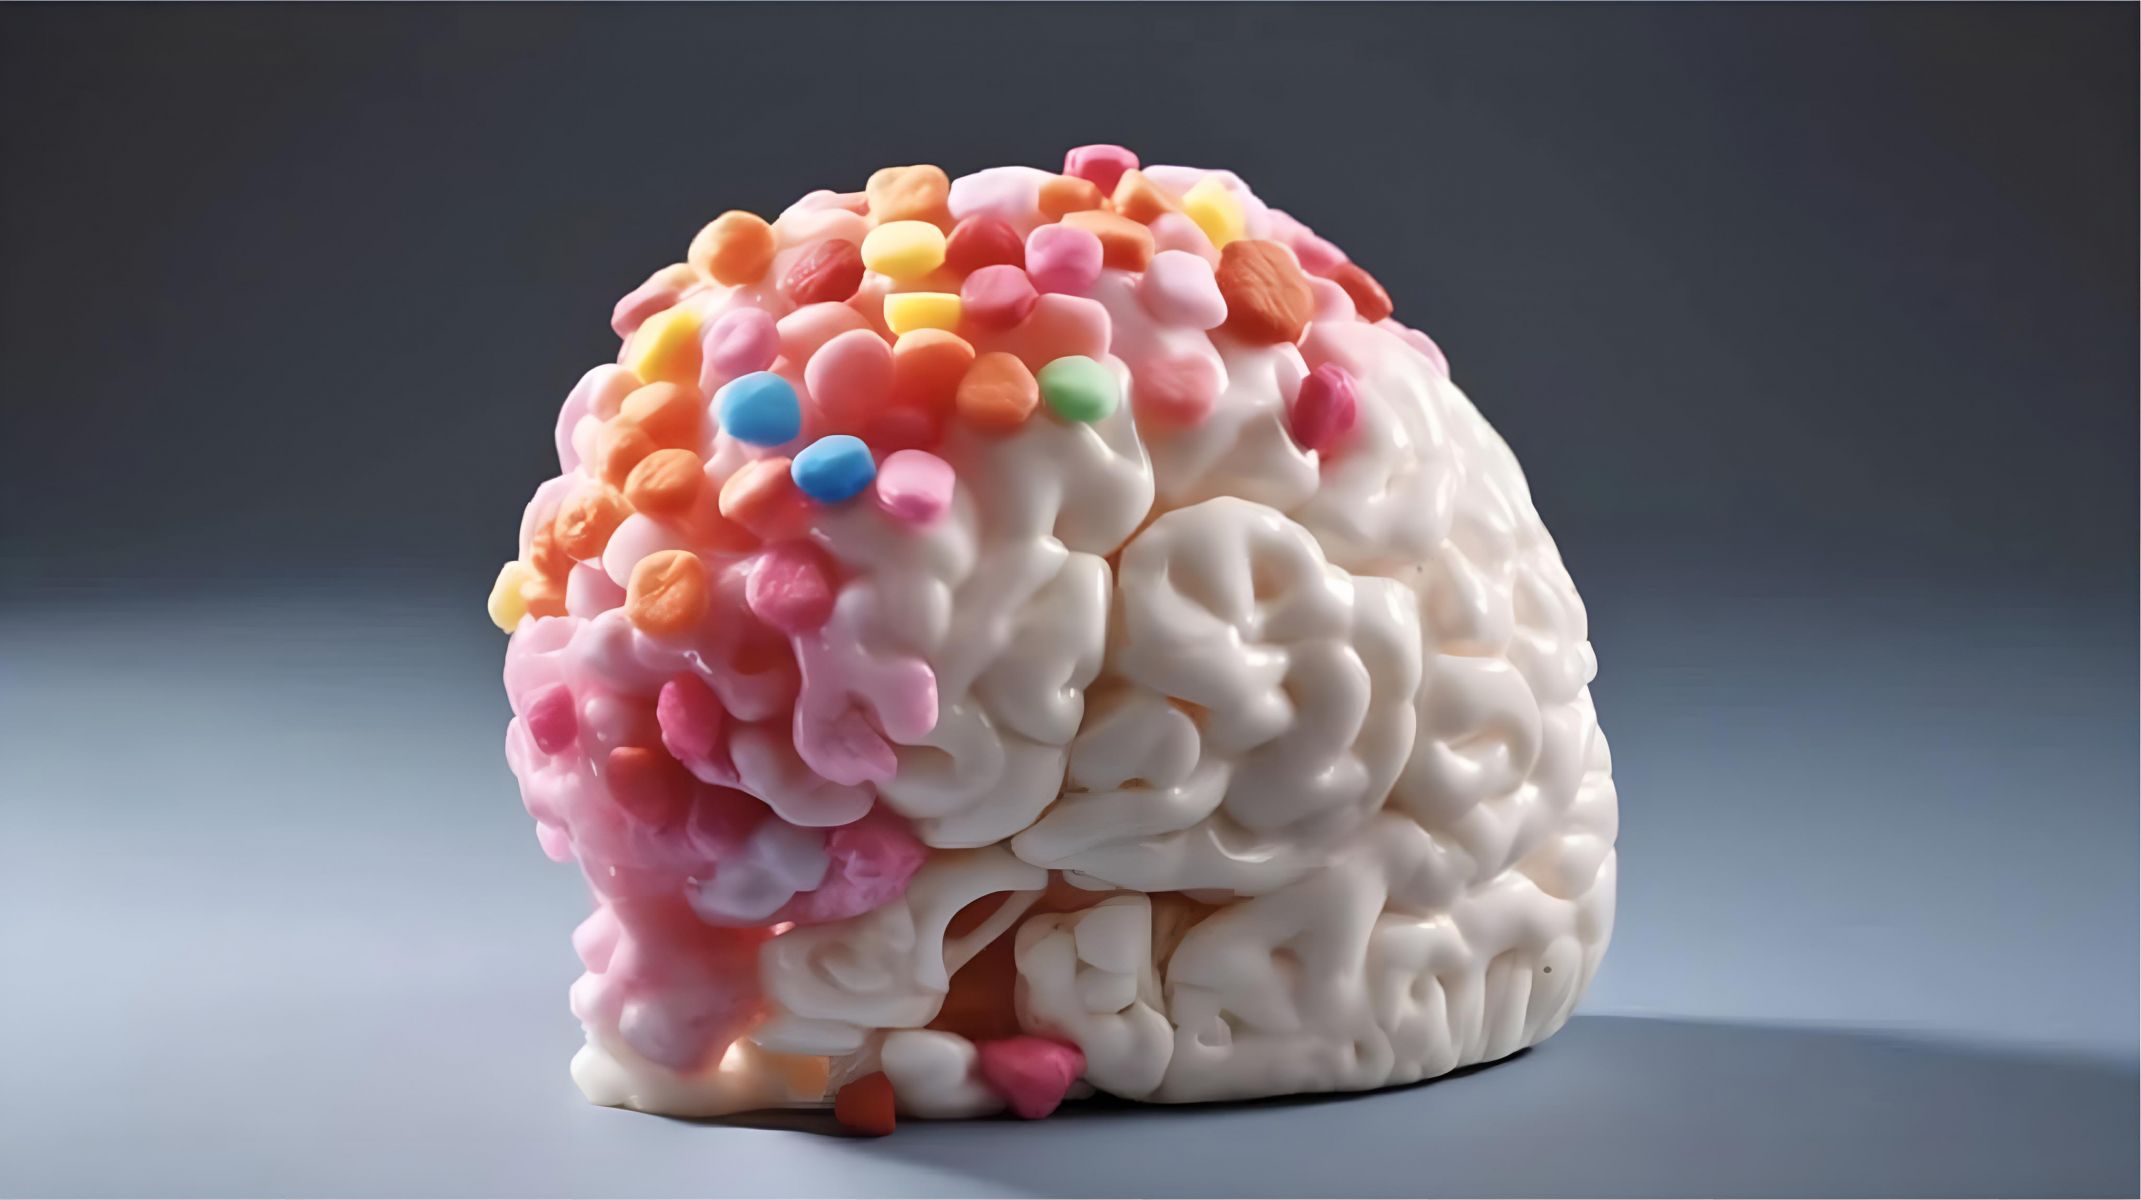 Şekerlerin Beyin Plastisitesini Etkileyerek Öğrenme ve Belleği Nasıl Etkilediğini Ortaya Koyuyor